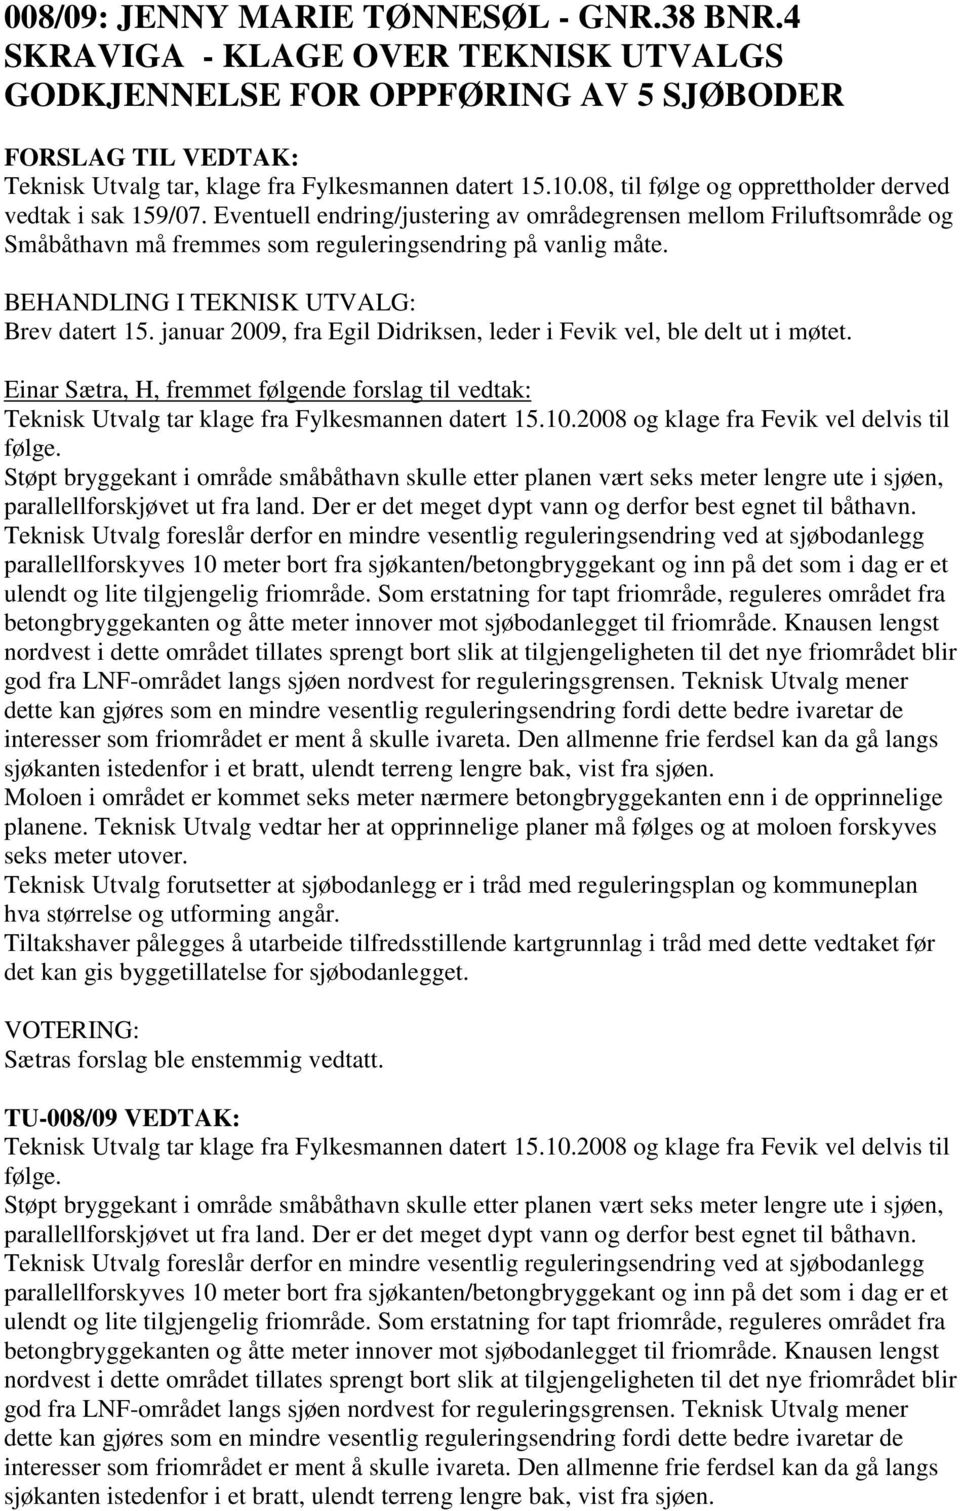 Brev datert 15. januar 2009, fra Egil Didriksen, leder i Fevik vel, ble delt ut i møtet. Einar Sætra, H, fremmet følgende forslag til vedtak: Teknisk Utvalg tar klage fra Fylkesmannen datert 15.10.